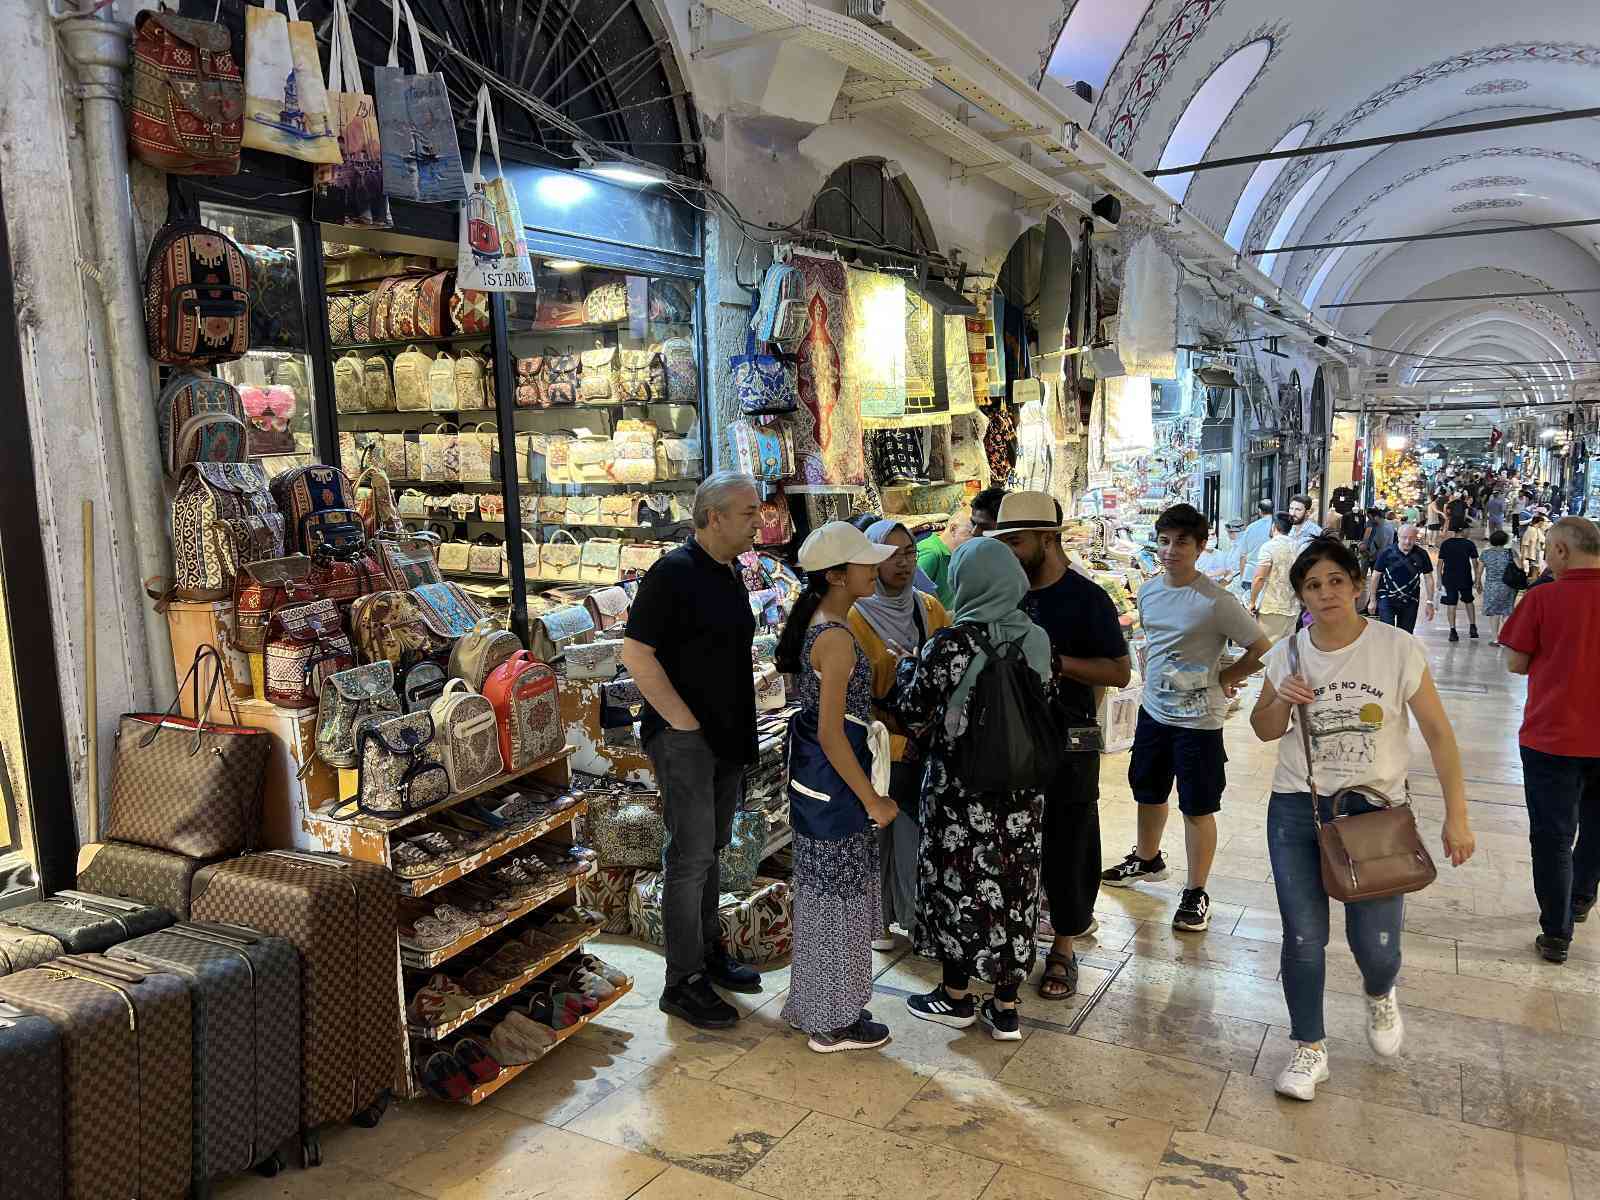 Suudi turistlerin gelmesi ile birlikte Kapalıçarşı’da ziyaret sayıları arttı